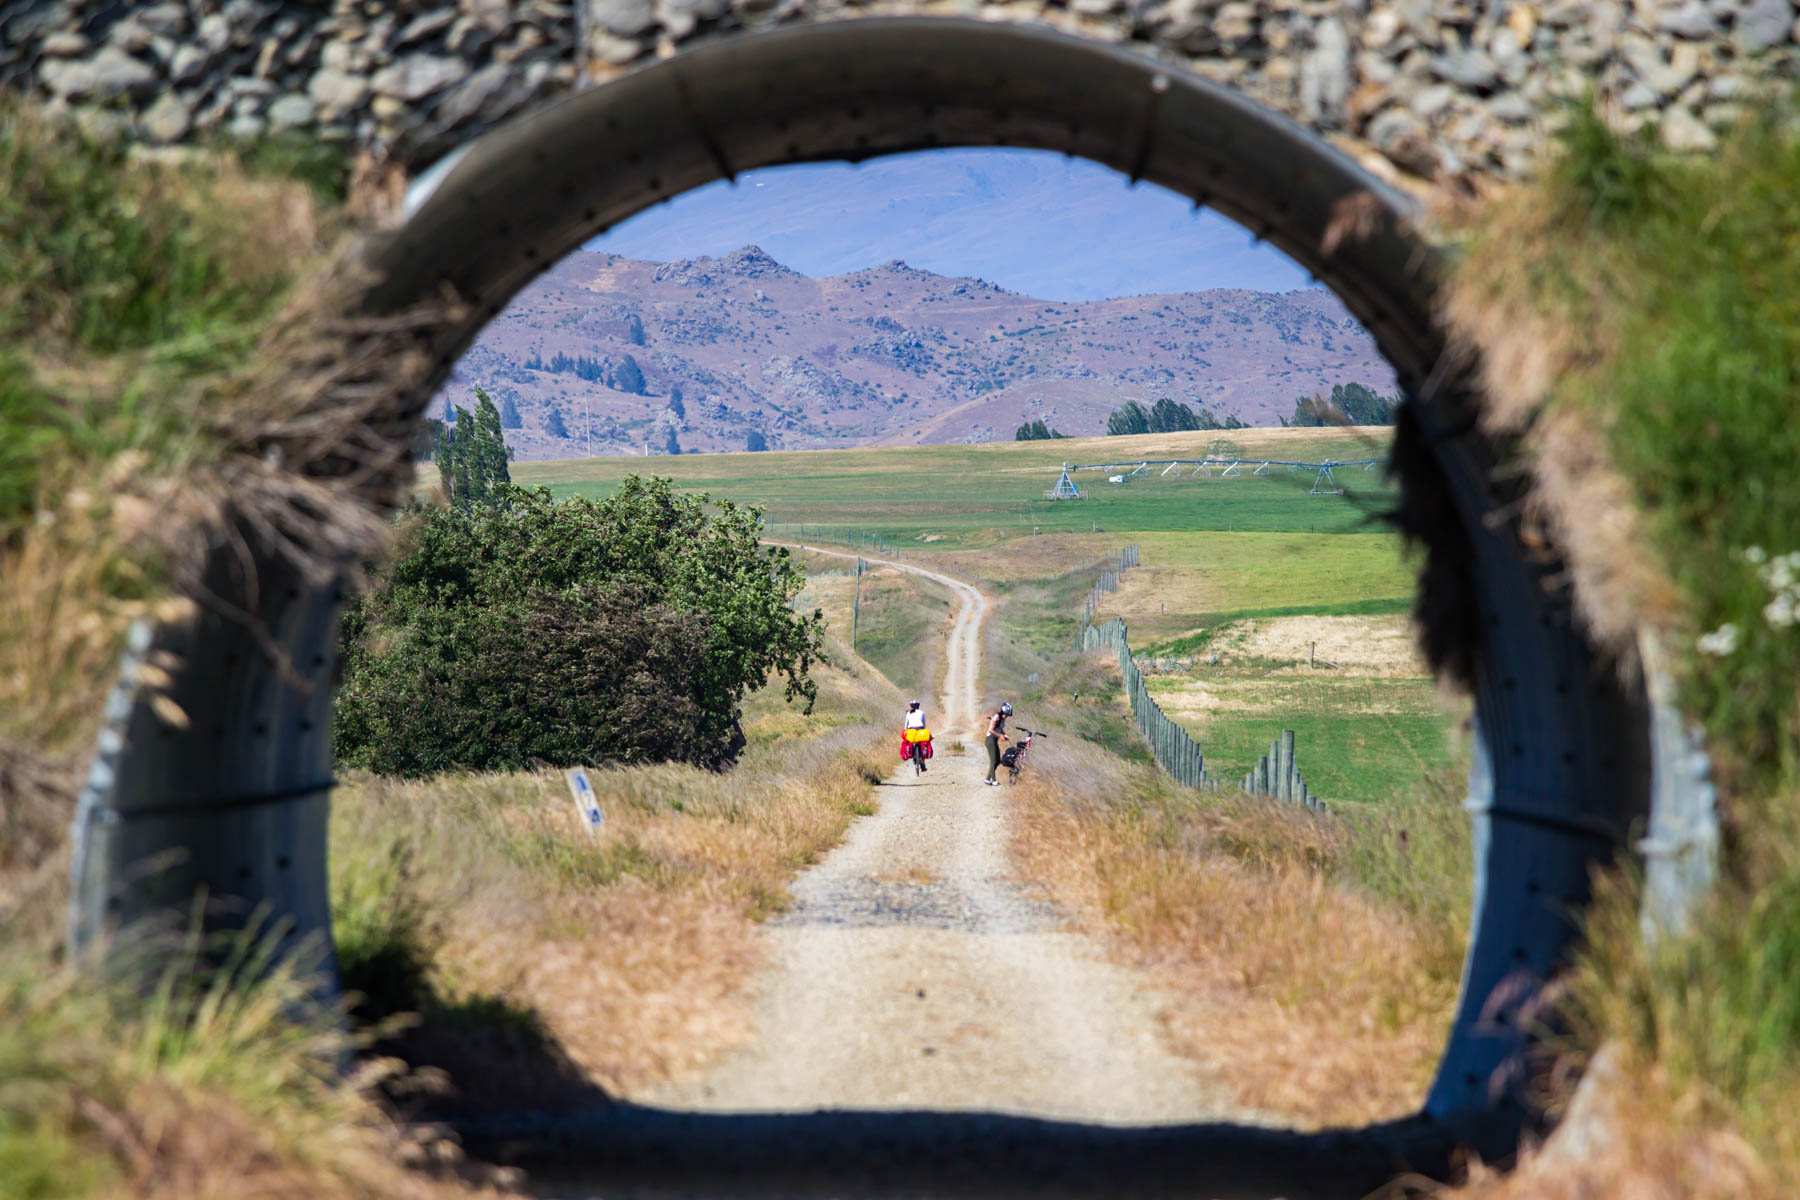 Paysage de campagne où un sentier passe à travers un petit tunnel puis continue en ligne droite. Au loin, on distingue deux cyclistes, des arbres et des collines rocailleuses.